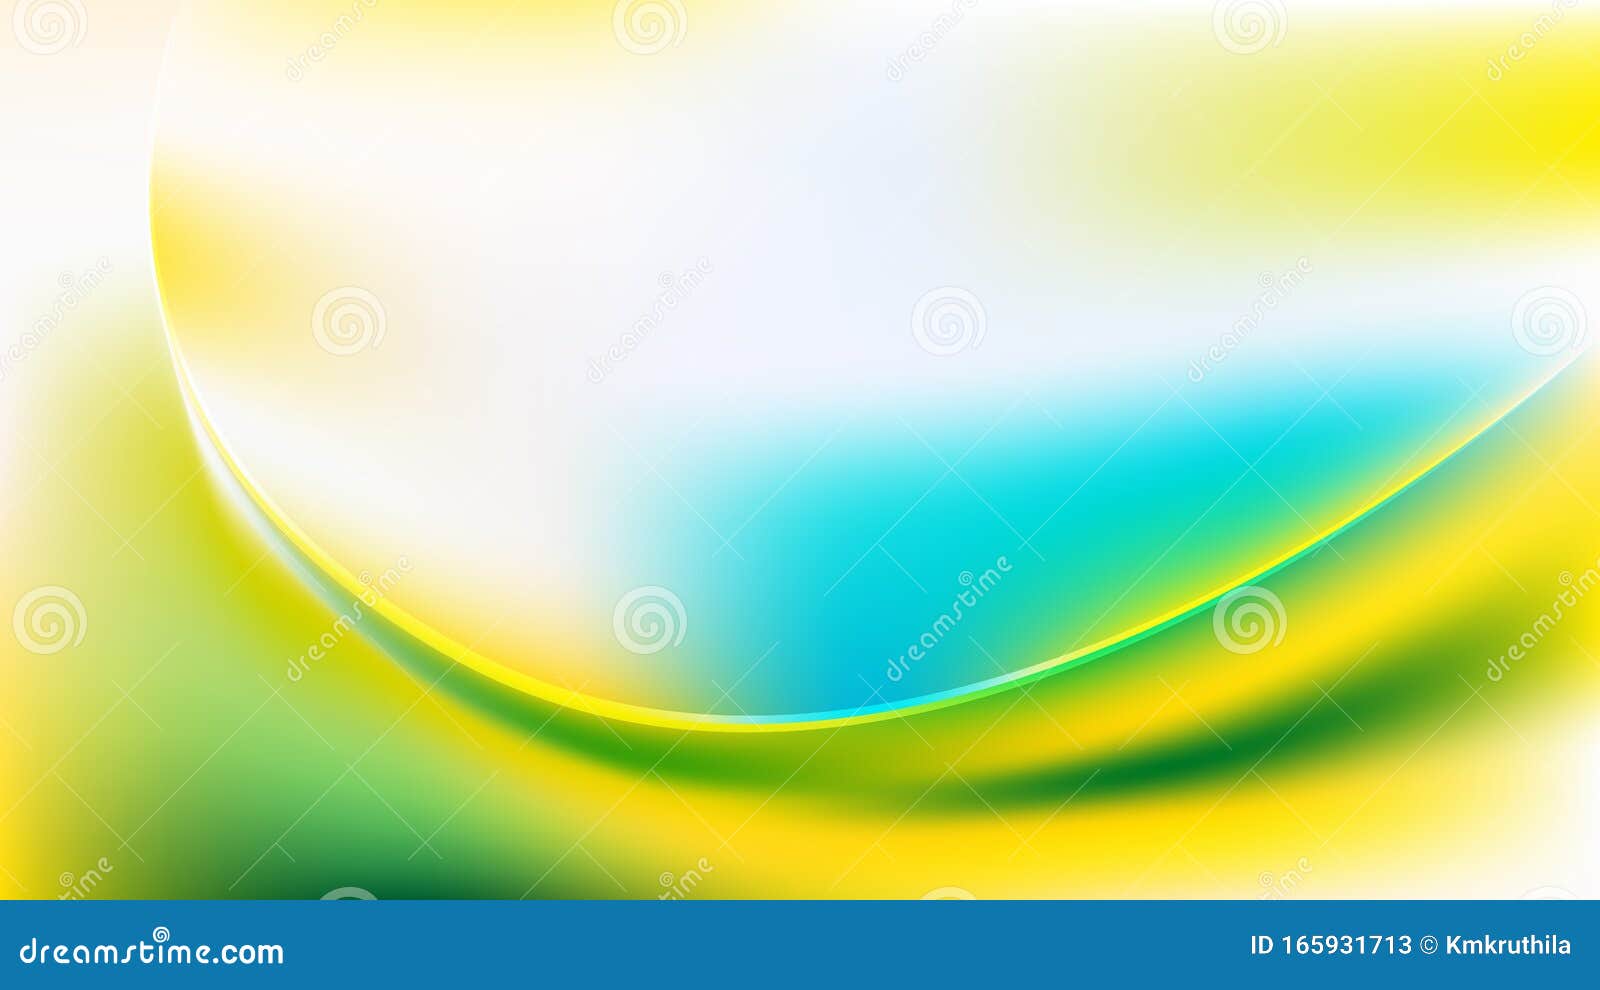 Bạn đang tìm một mẫu sóng trừu tượng màu xanh dương, xanh lá cây và vàng đầy sáng tạo để làm mới thiết kế của mình? Đừng bỏ qua sản phẩm này! Với những đường sóng đậm chất trừu tượng và màu sắc rực rỡ, chắc chắn sẽ khiến sản phẩm của bạn nổi bật hơn bao giờ hết!